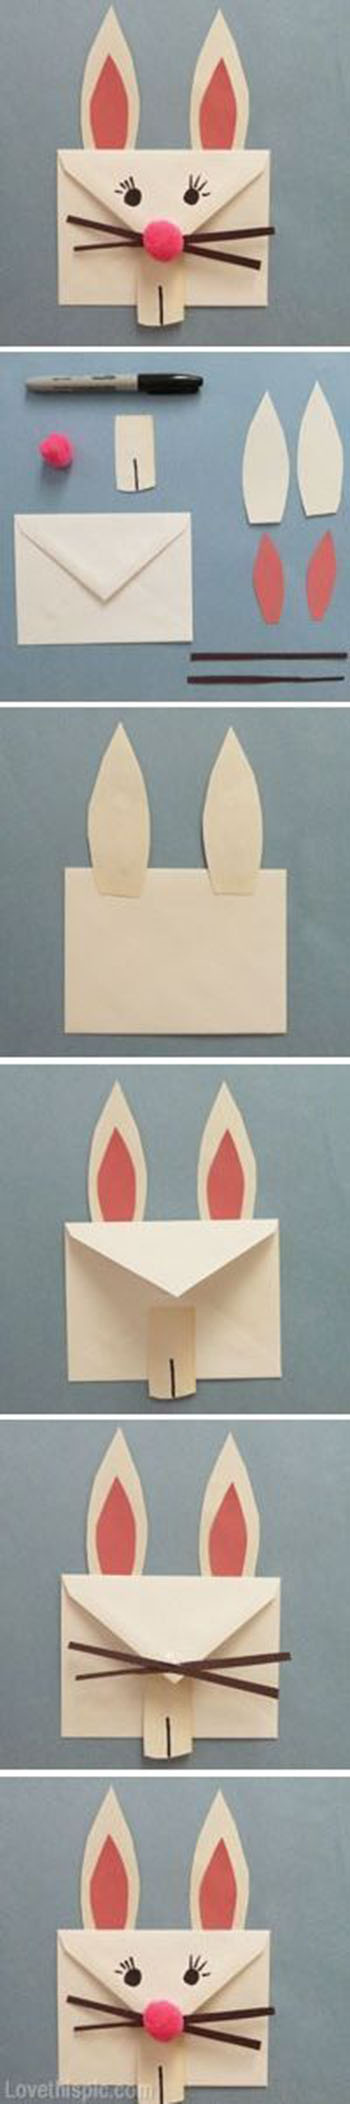 DIY Bunny Envelope11